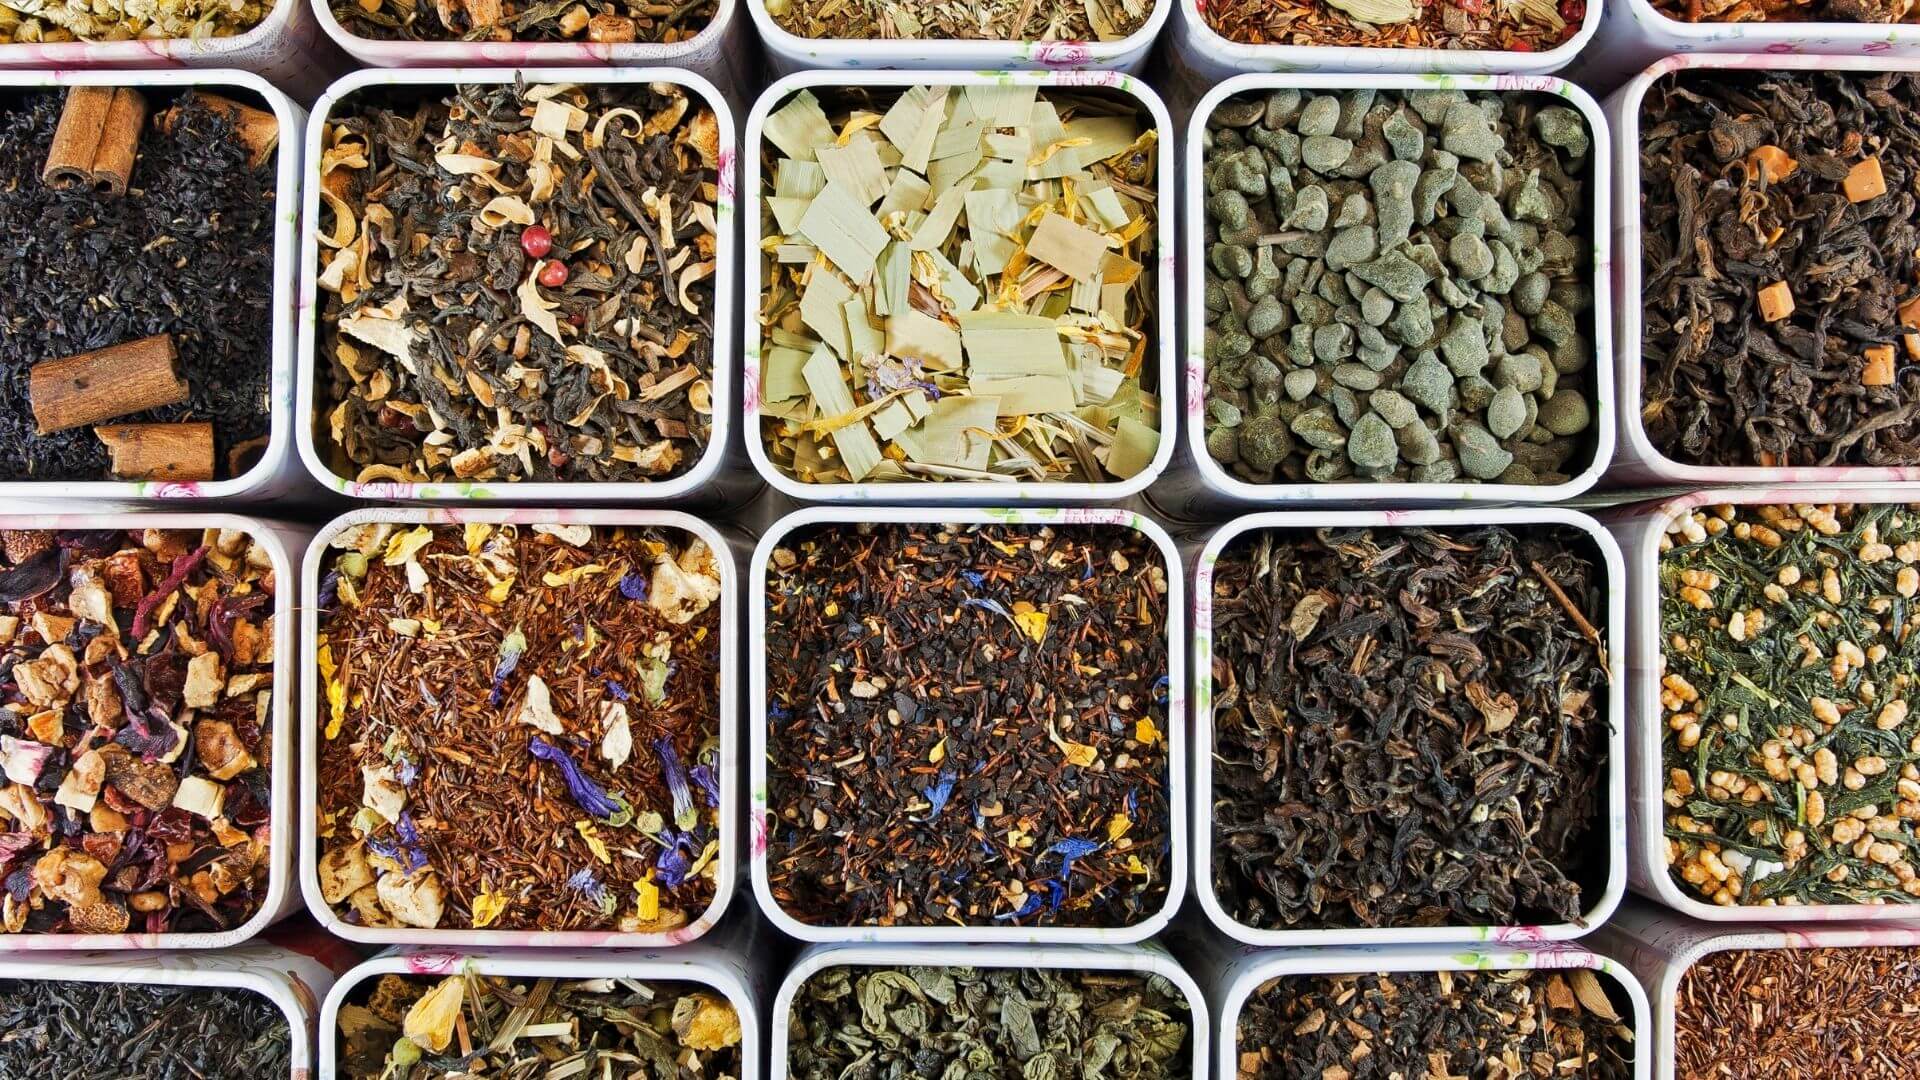 What to Buy in Bulk - Loose Leaf Tea